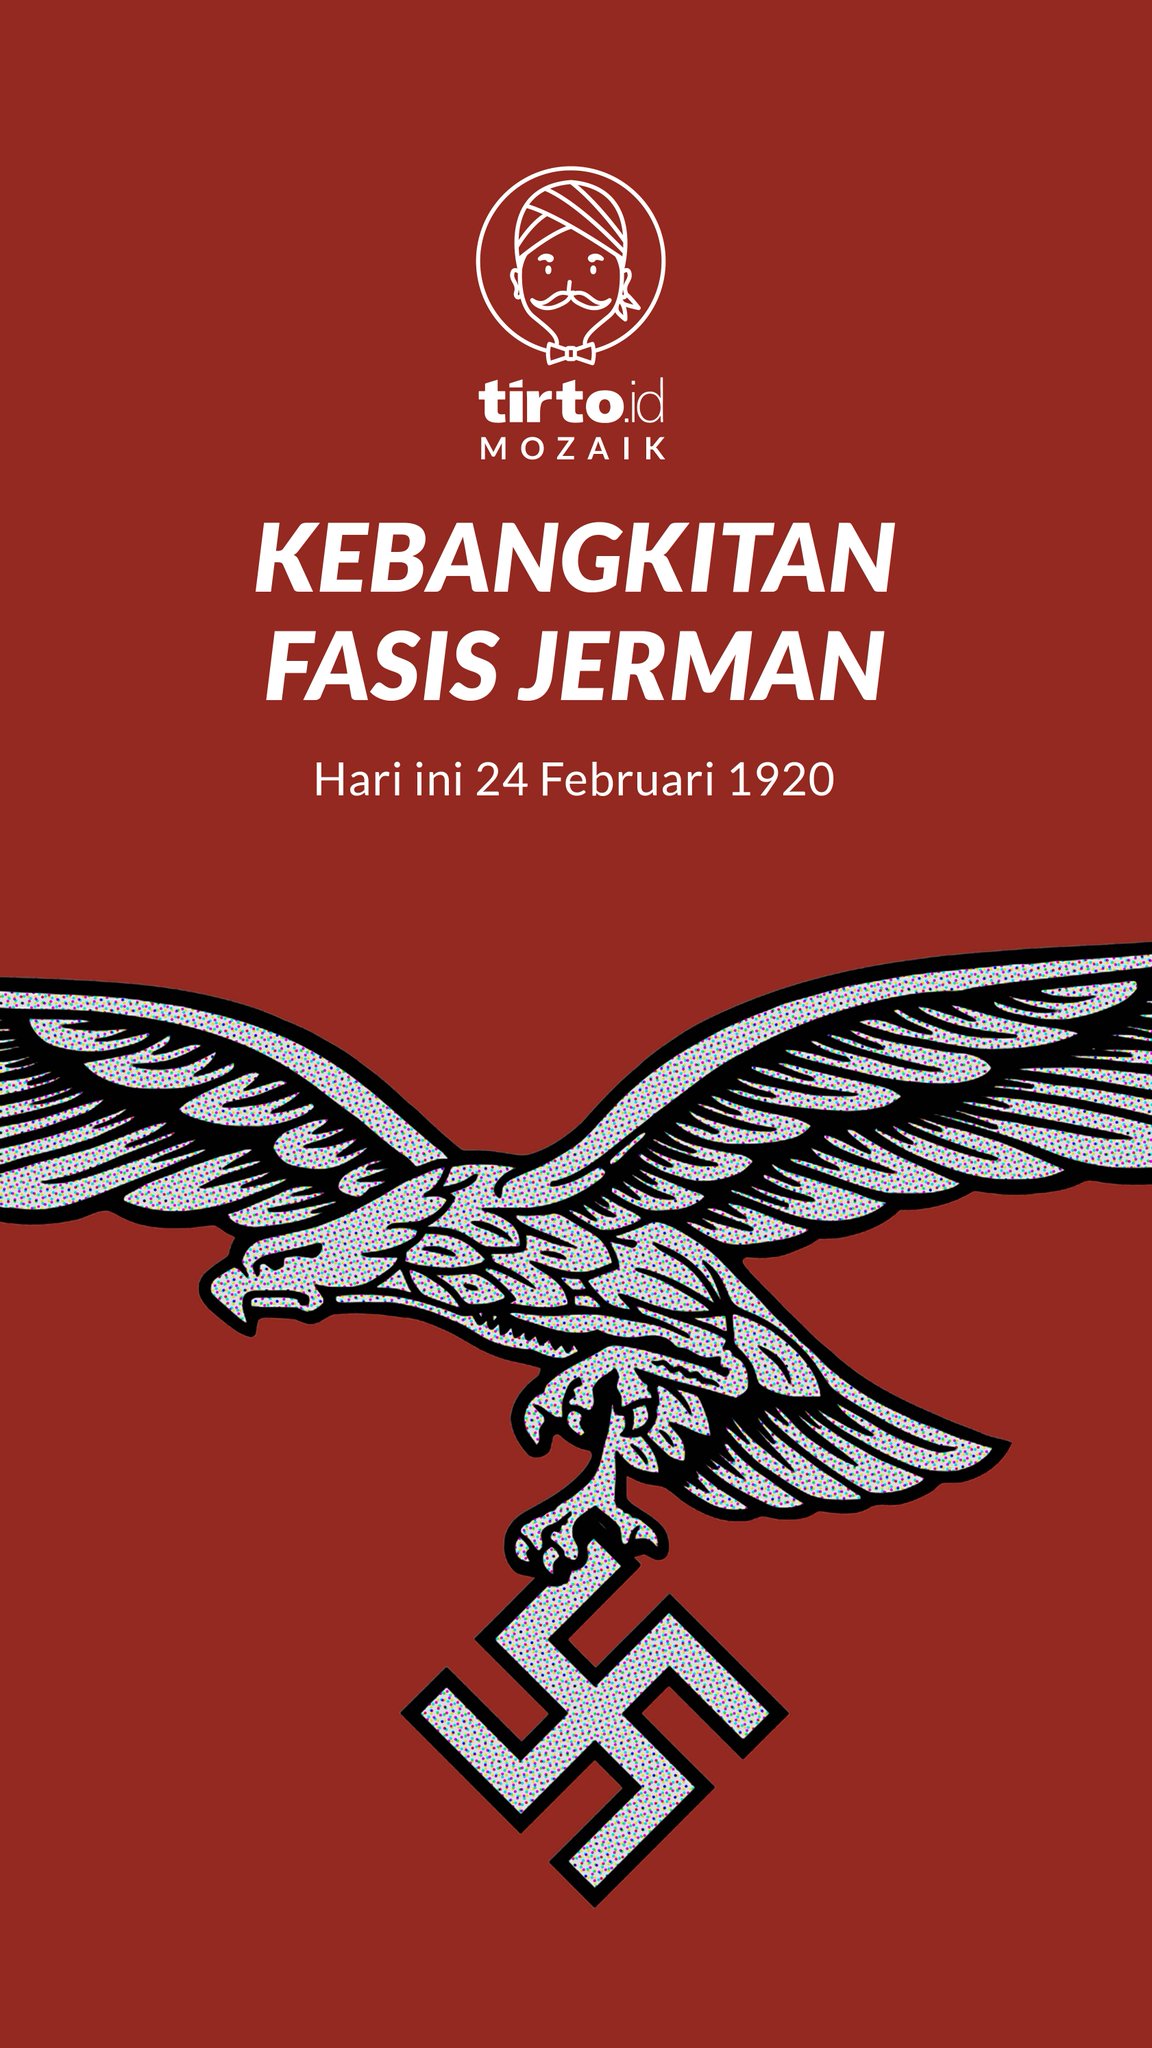 Logo nazi jerman